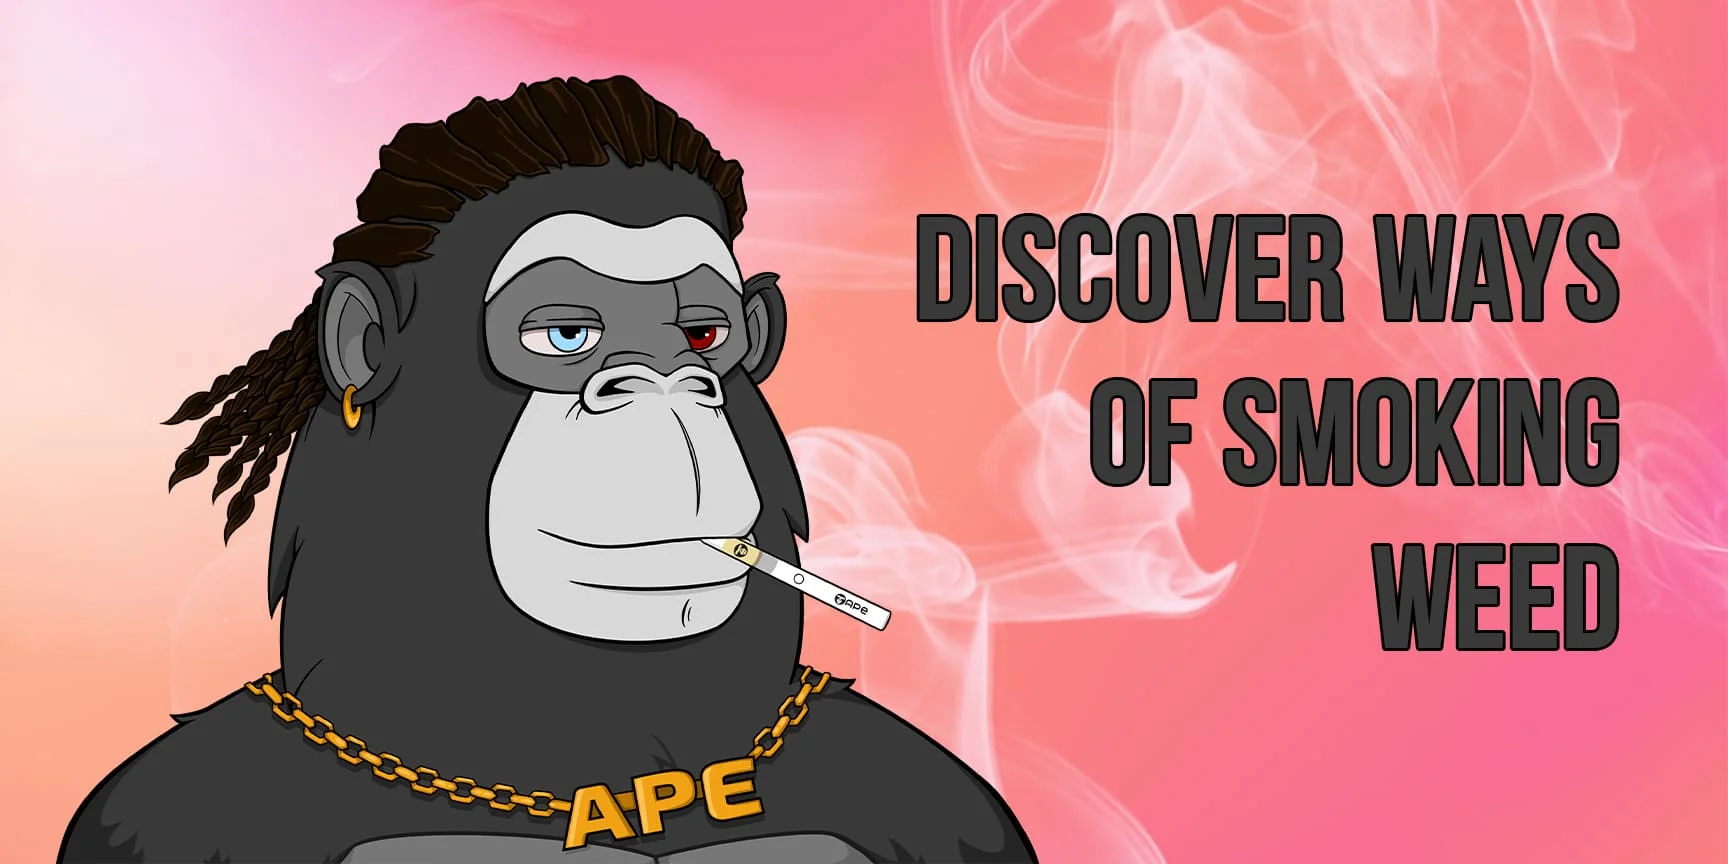 Ape smokes